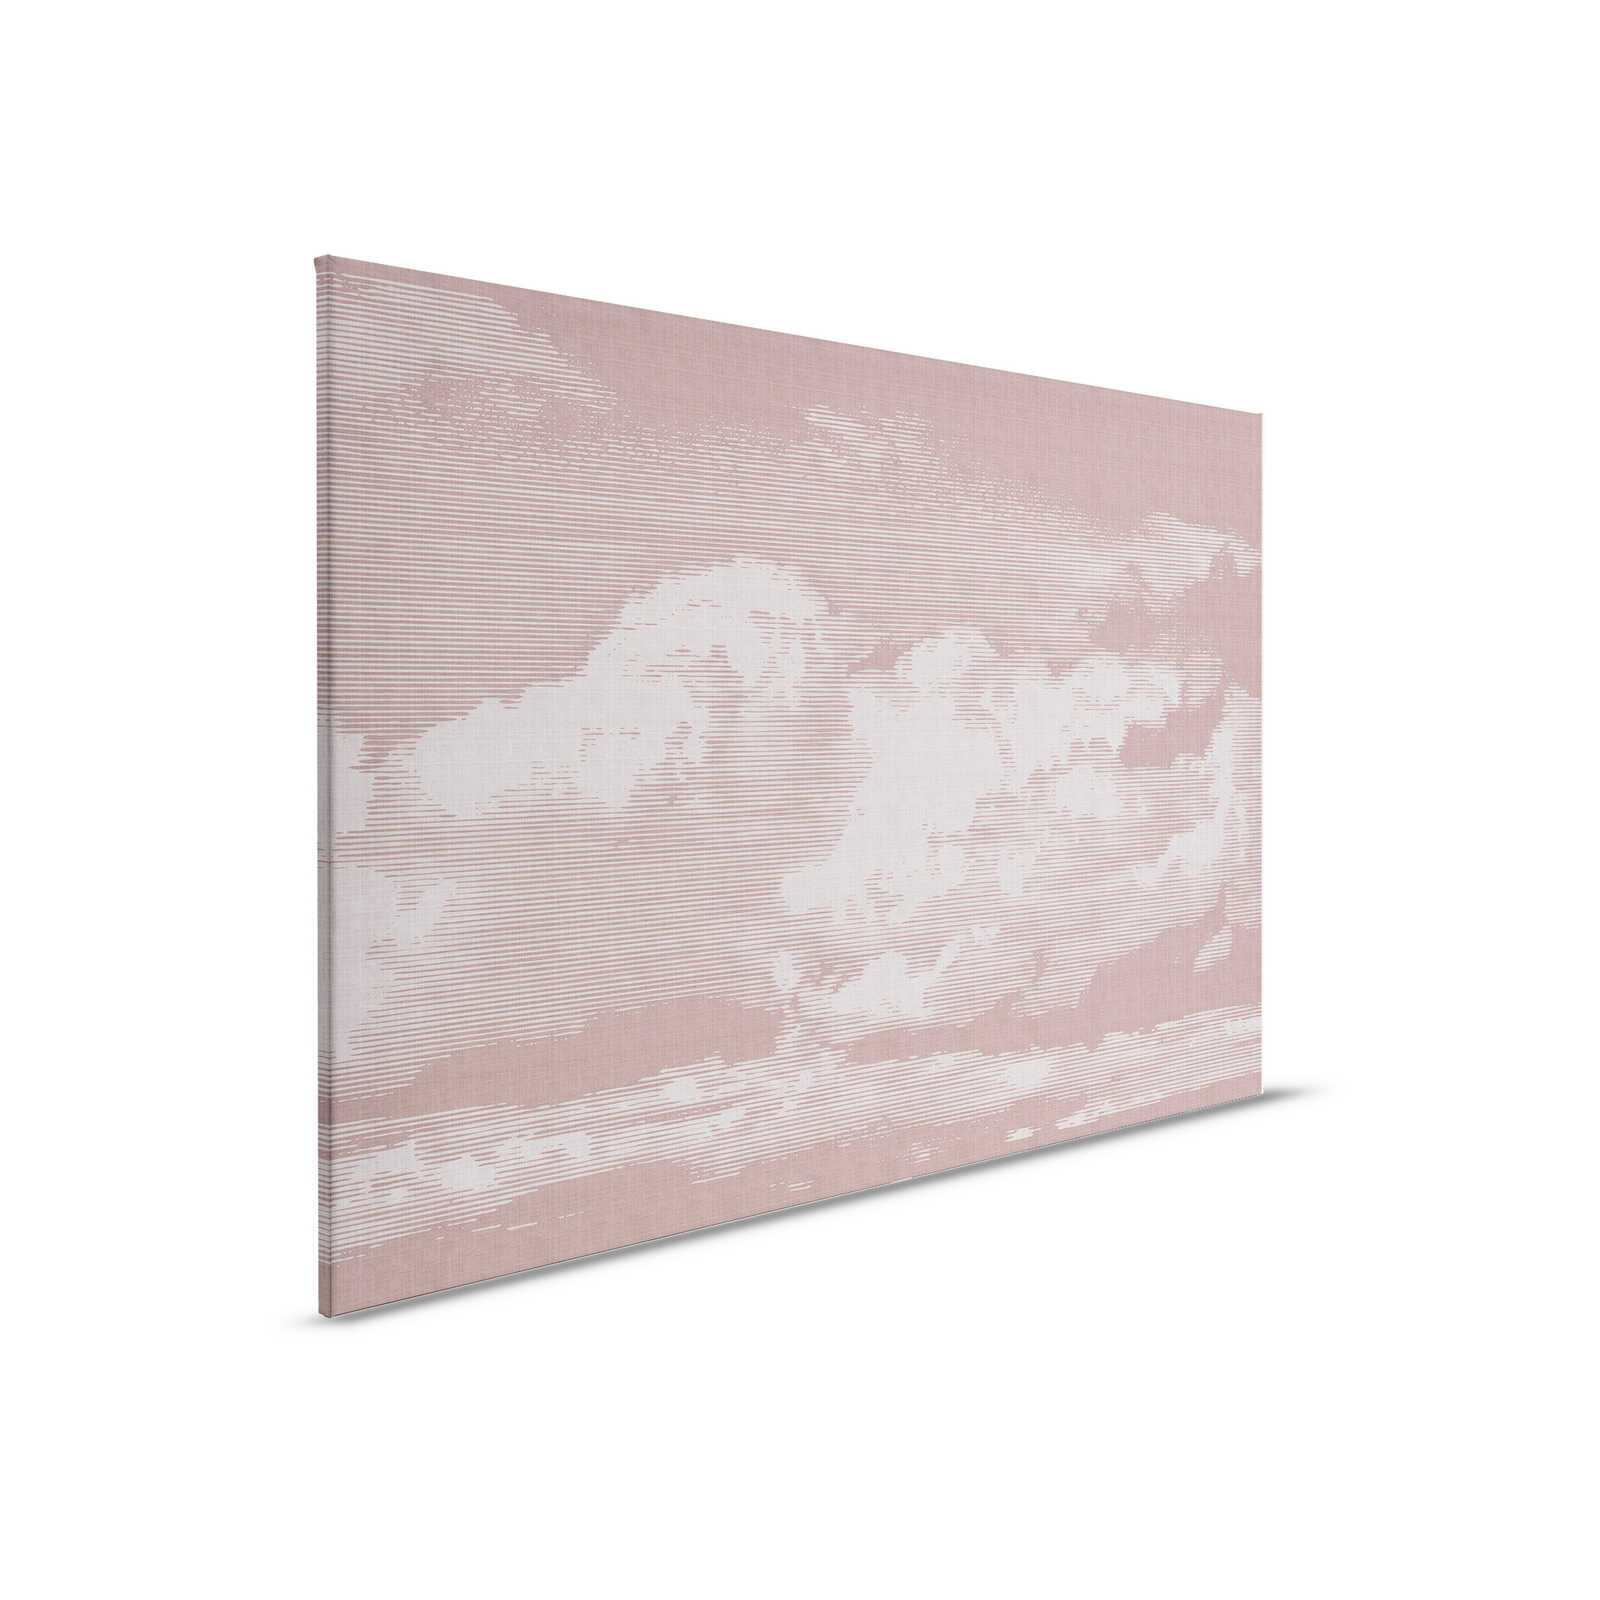 Clouds 3 - Hemelse canvasfoto met wolkenmotief - Natuurlijke linnenlook - 0,90 m x 0,60 m
